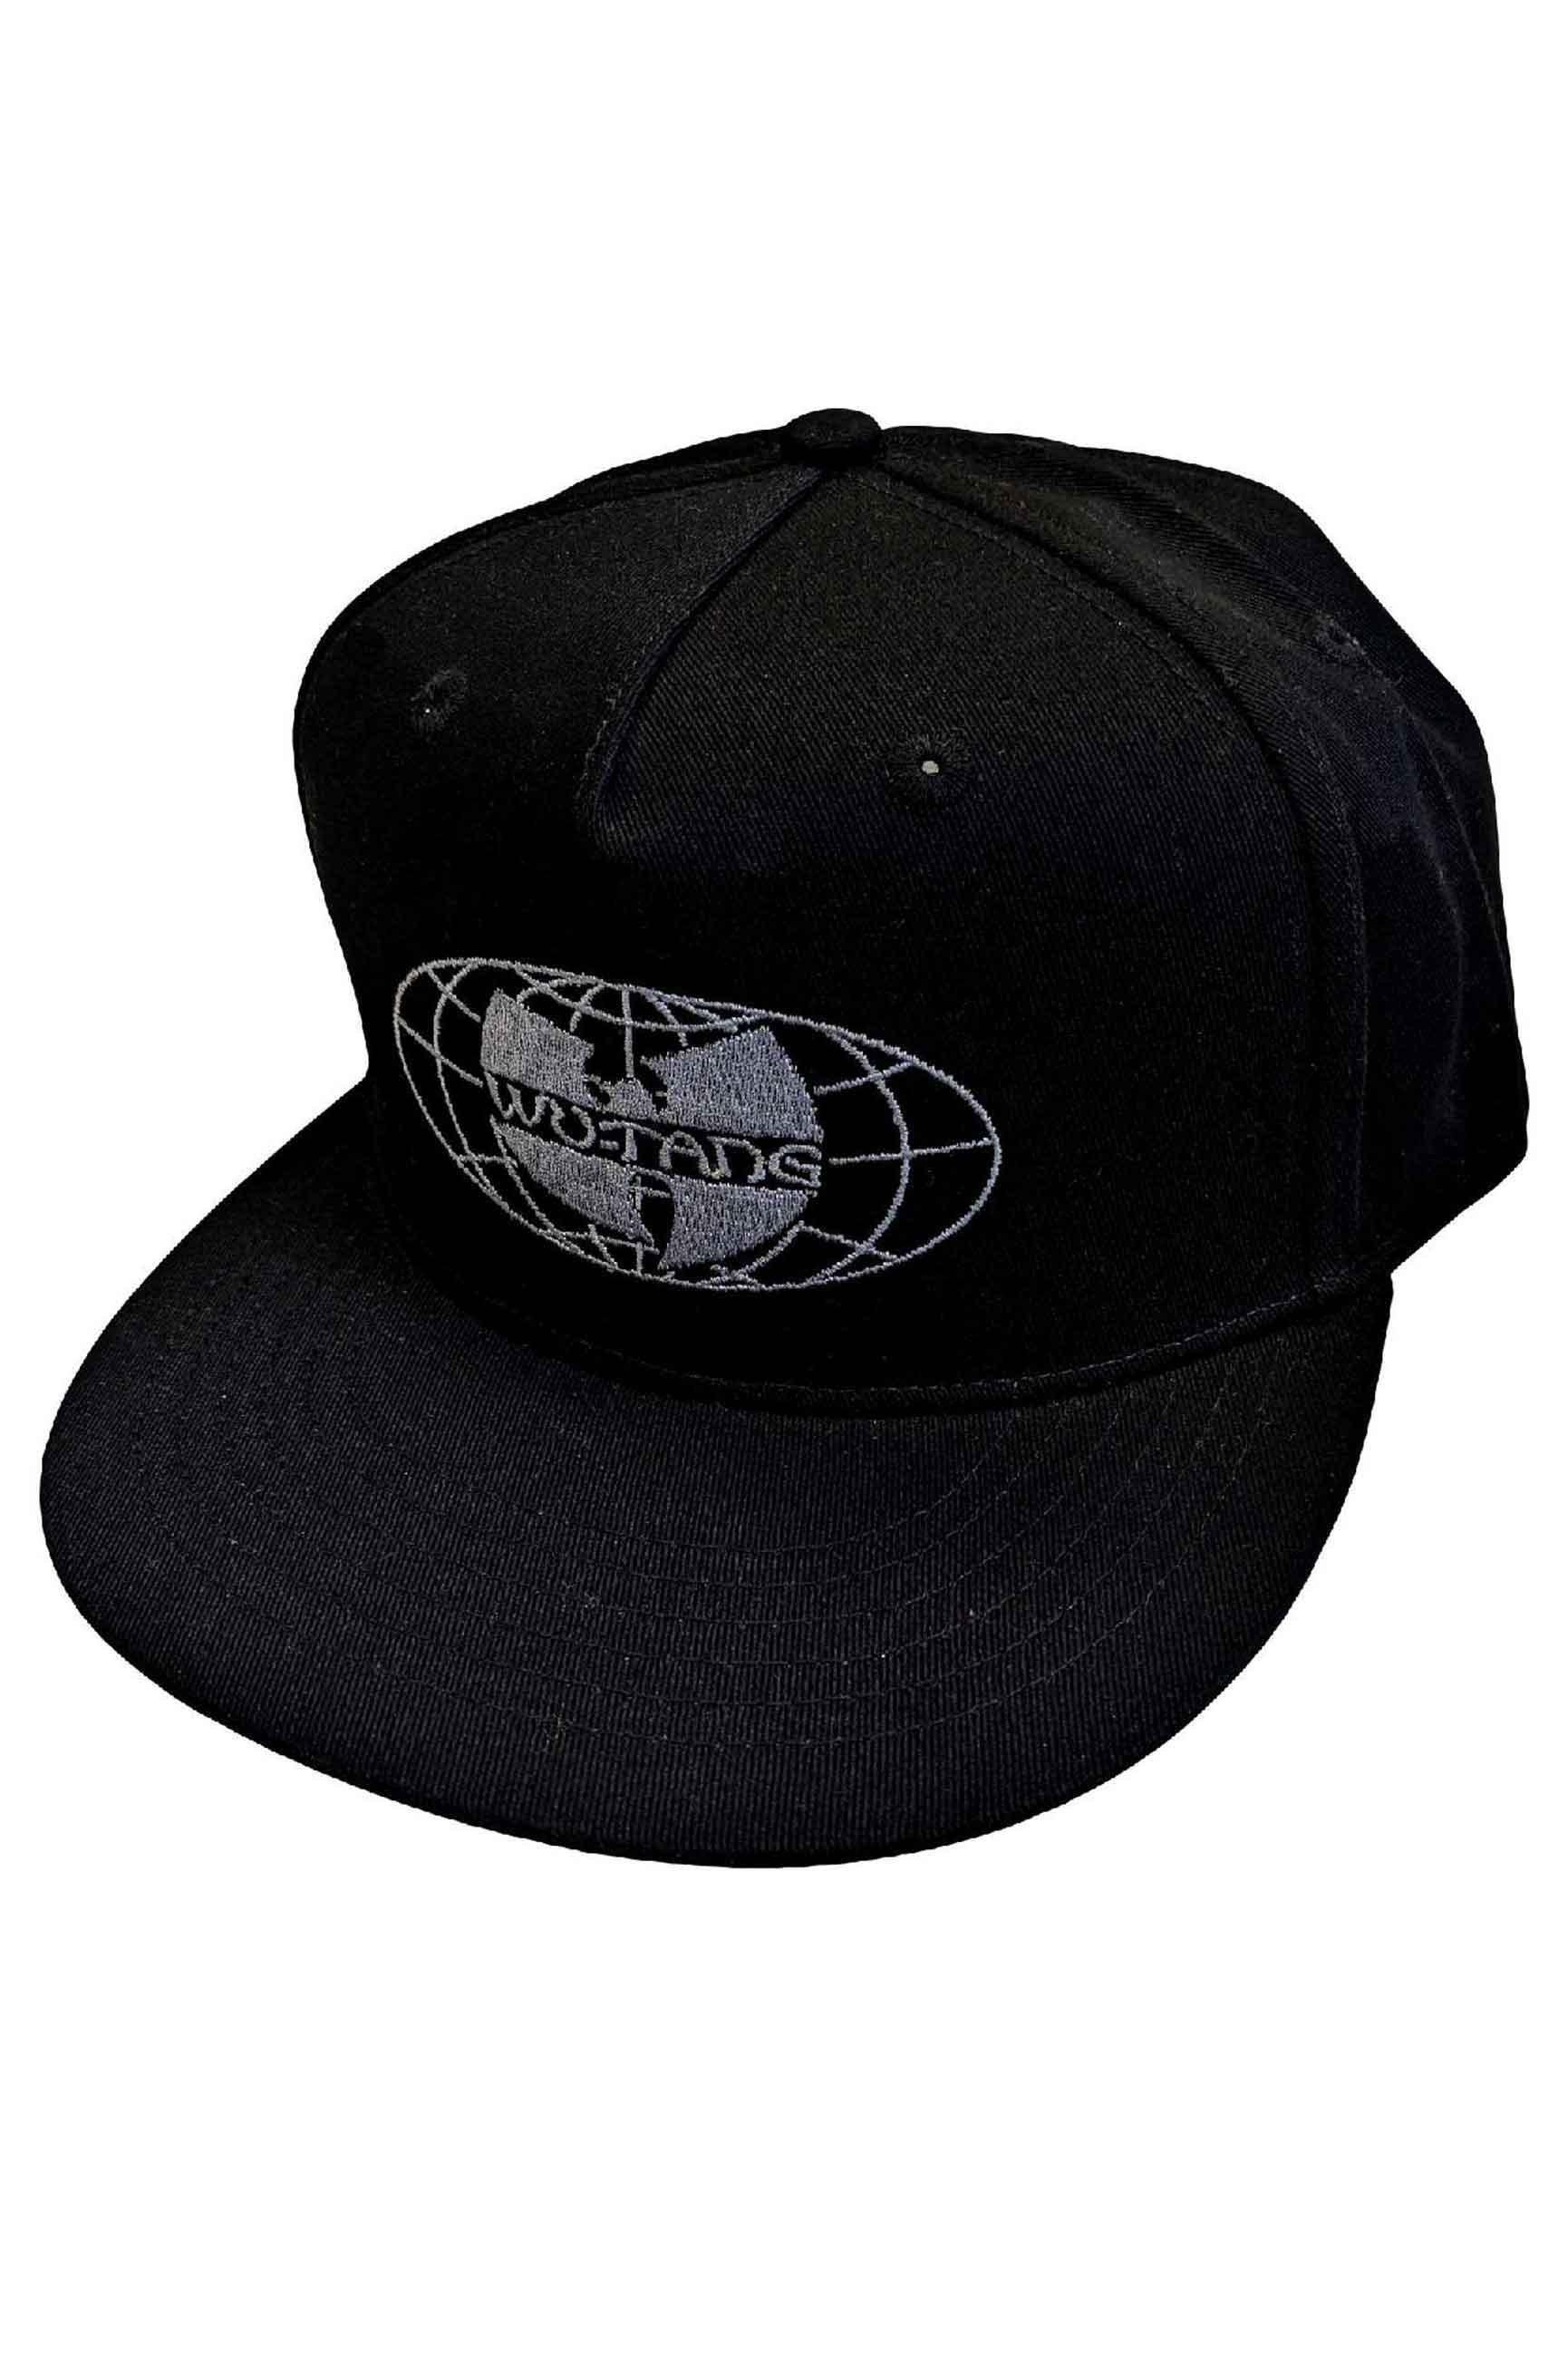 Бейсбольная кепка Snapback с логотипом World Wide Wu Tang Clan, черный кепка с техасским флагом кепка унисекс кепка бейсболка кепки для папы кепка тракер